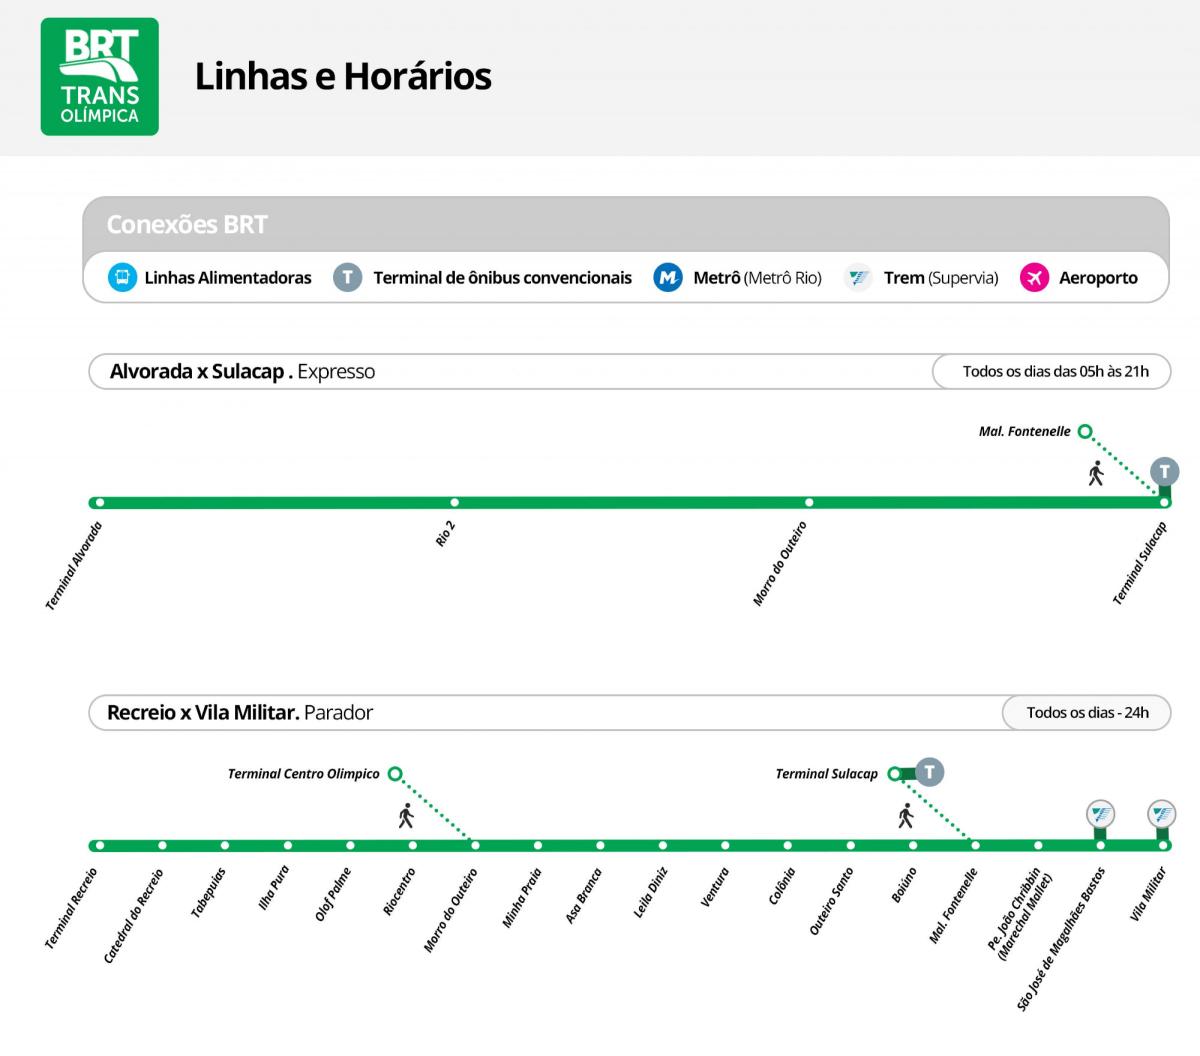 نقشه BRT TransOlimpica - ایستگاه